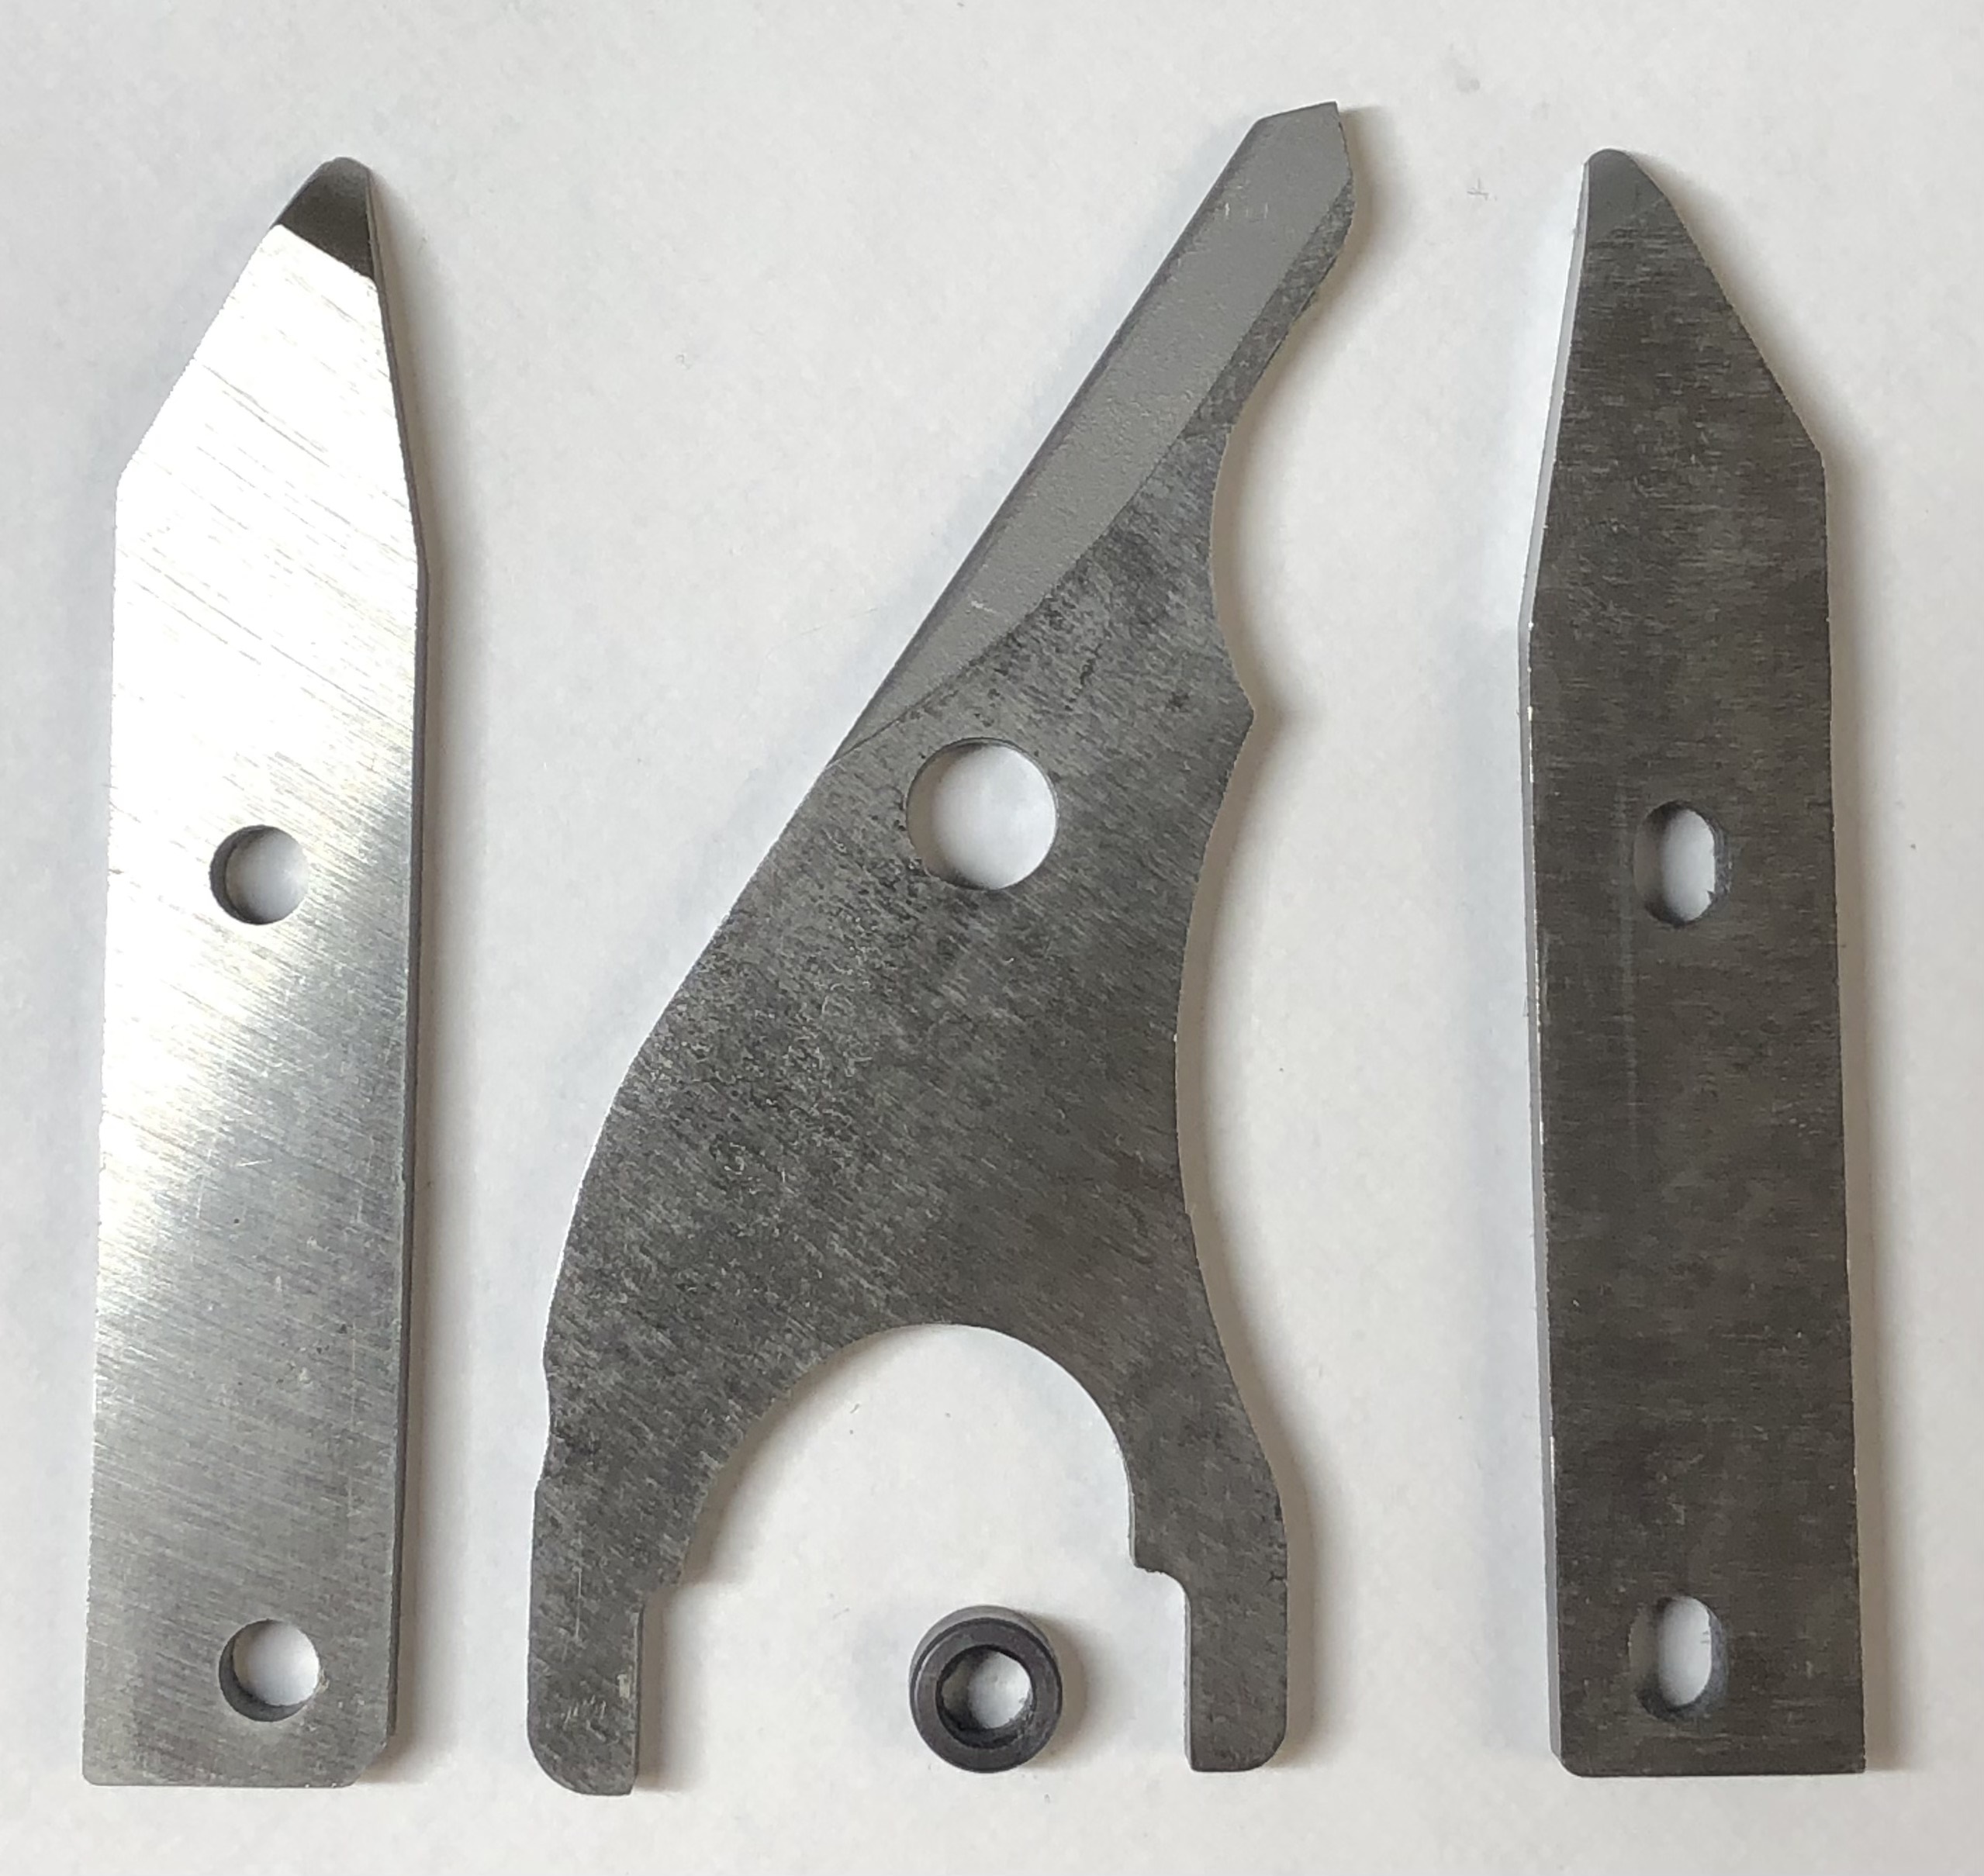 Makita - XSJ01 Shear Complete Blade Kit, Cincinnati General Tool